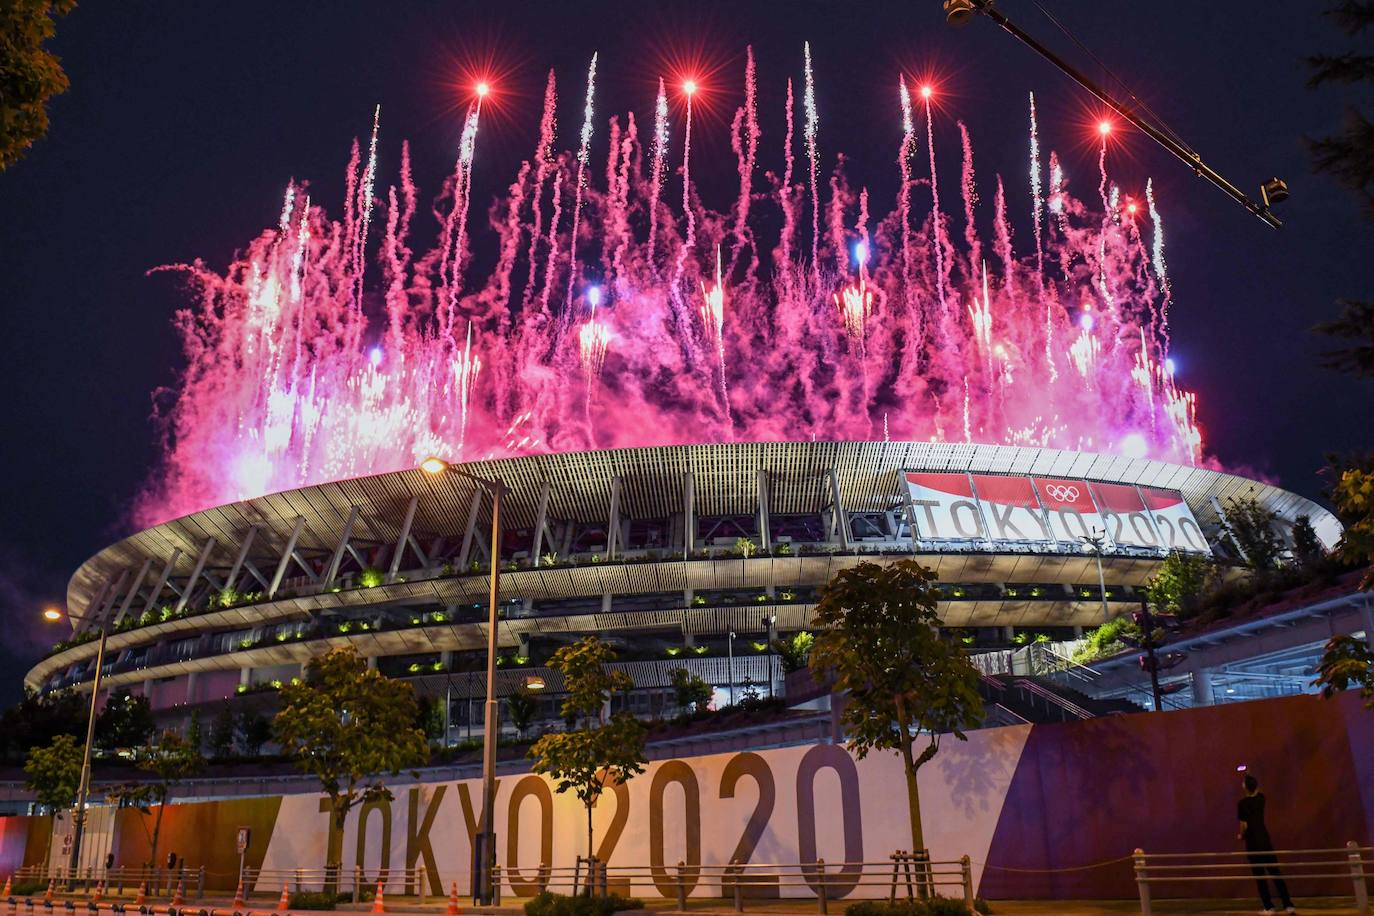 Los fuegos artificiales iluminan el cielo sobre el Estadio Olímpico durante la ceremonia de inauguración de los Juegos Olímpicos de Tokio 2020.